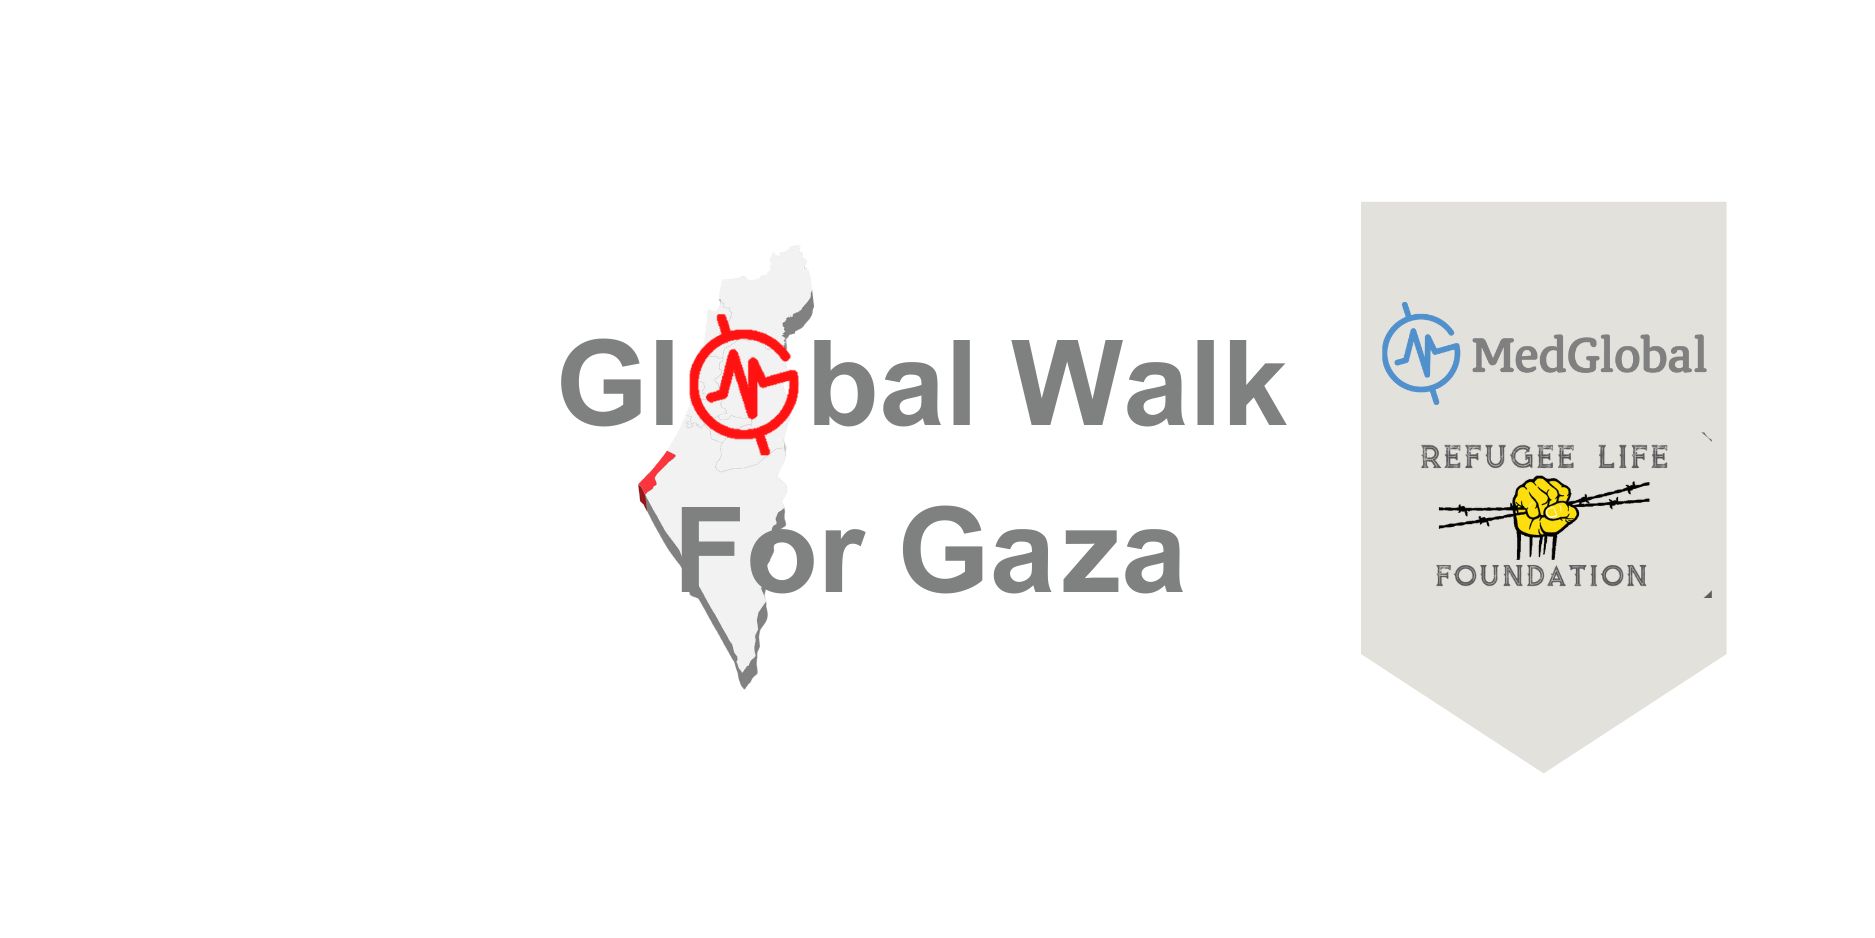 Global Walk For Gaza